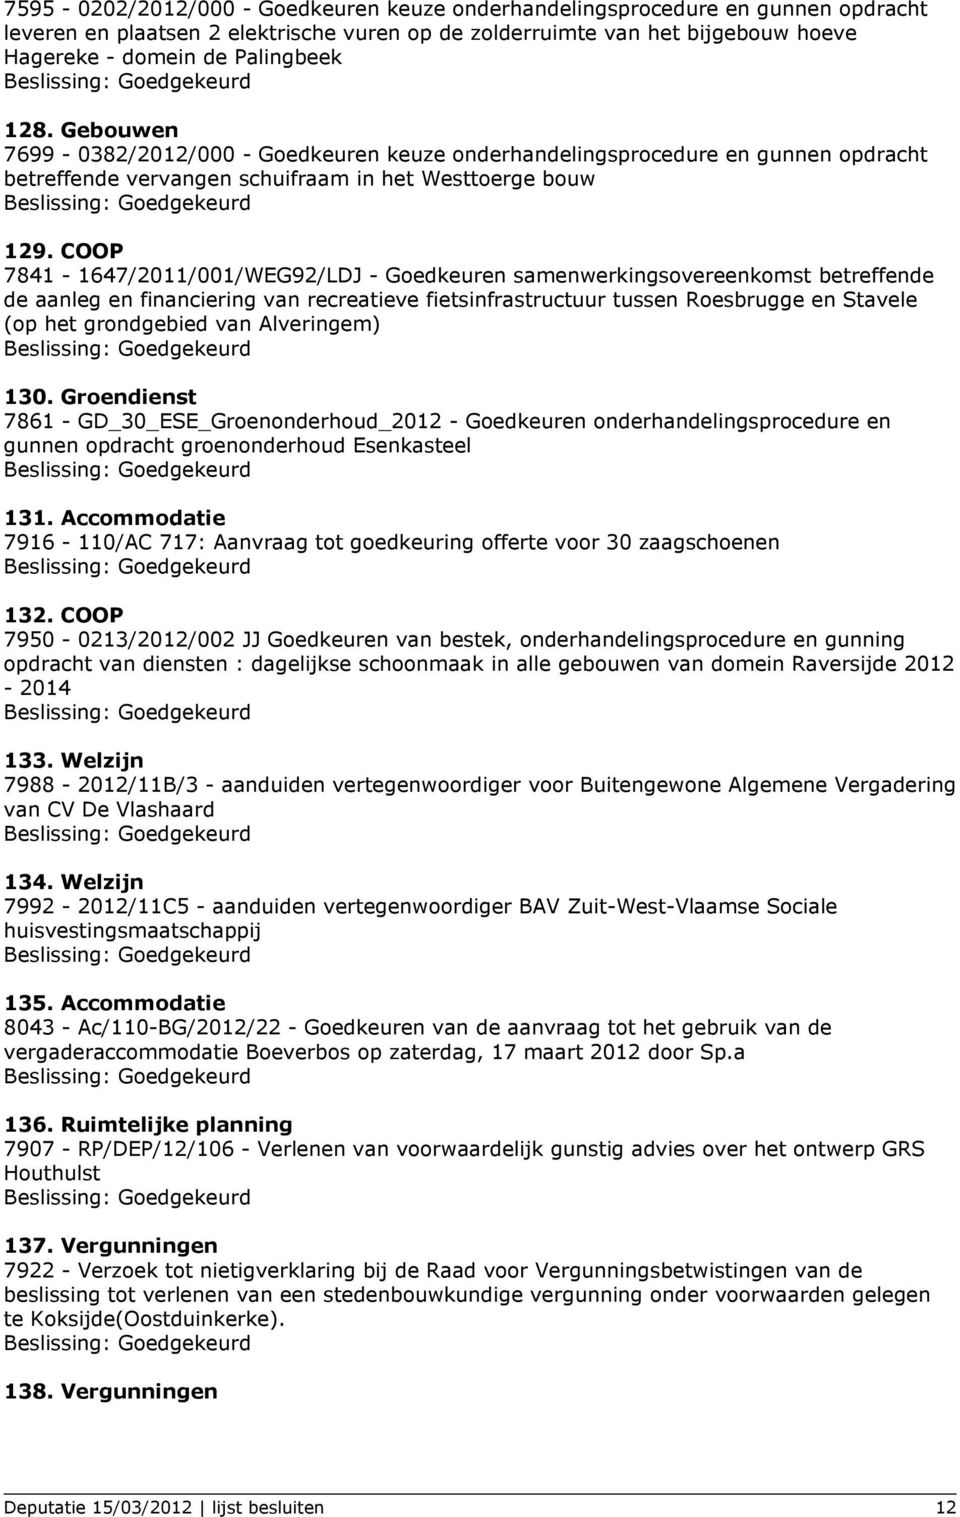 COOP 7841-1647/2011/001/WEG92/LDJ - Goedkeuren samenwerkingsovereenkomst betreffende de aanleg en financiering van recreatieve fietsinfrastructuur tussen Roesbrugge en Stavele (op het grondgebied van